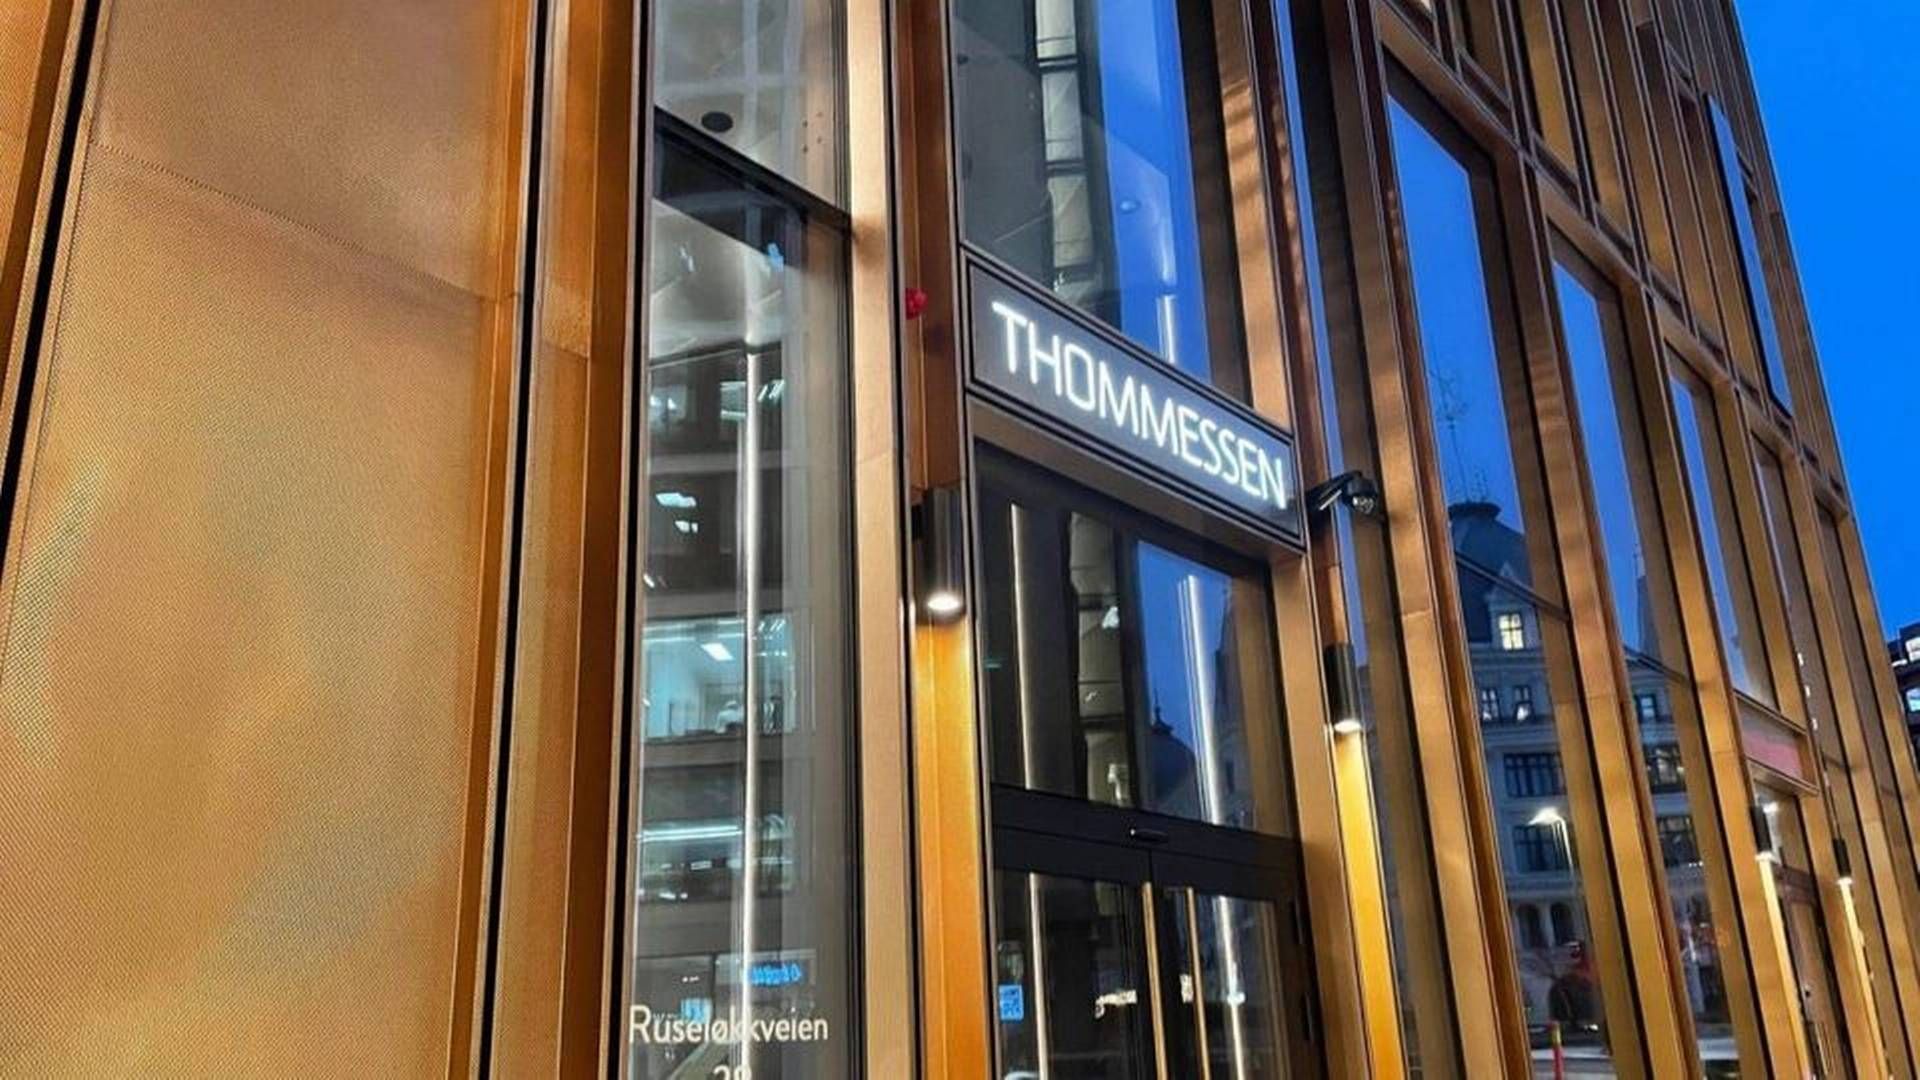 Advokatfirmaet Thommessens hovedkontor i Oslo. | Foto: Stian Olsen